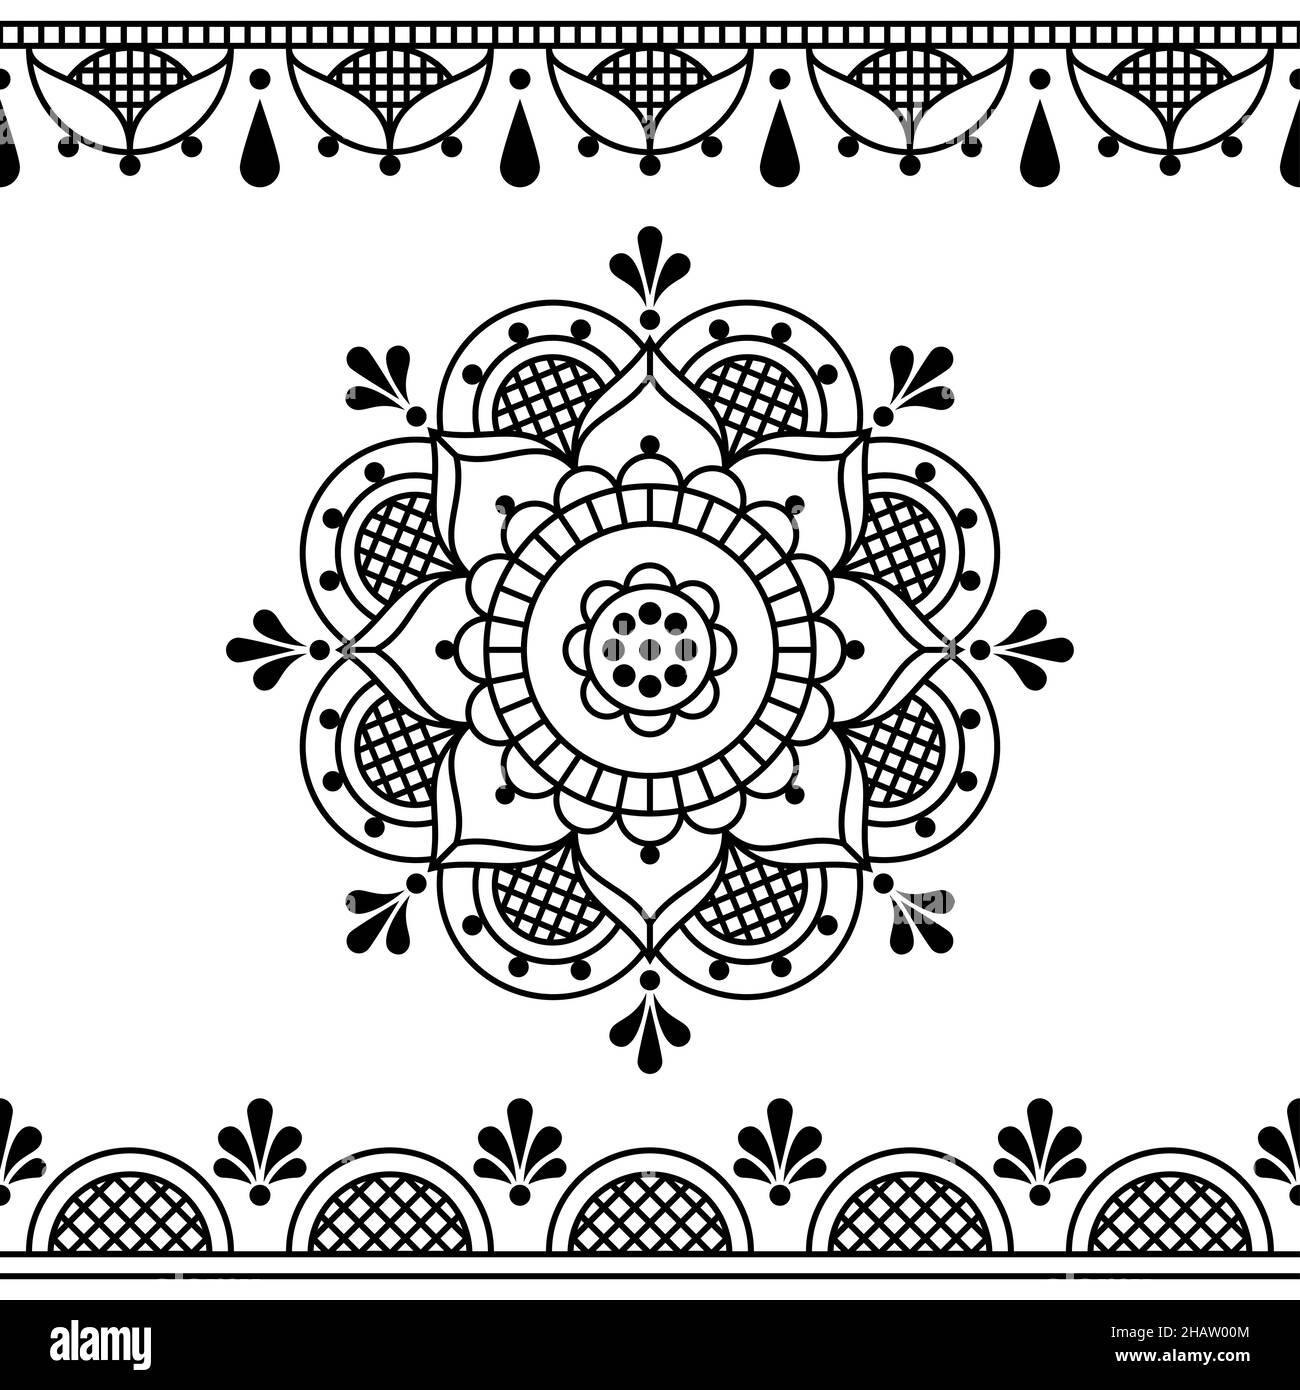 Florale Linie Kunst Vektor schwarz Design inspiriert von den traditionellen Spitzen und Stickereien Muster, Retro Hochzeitseinladung oder Grußkarte backgorund wit Stock Vektor